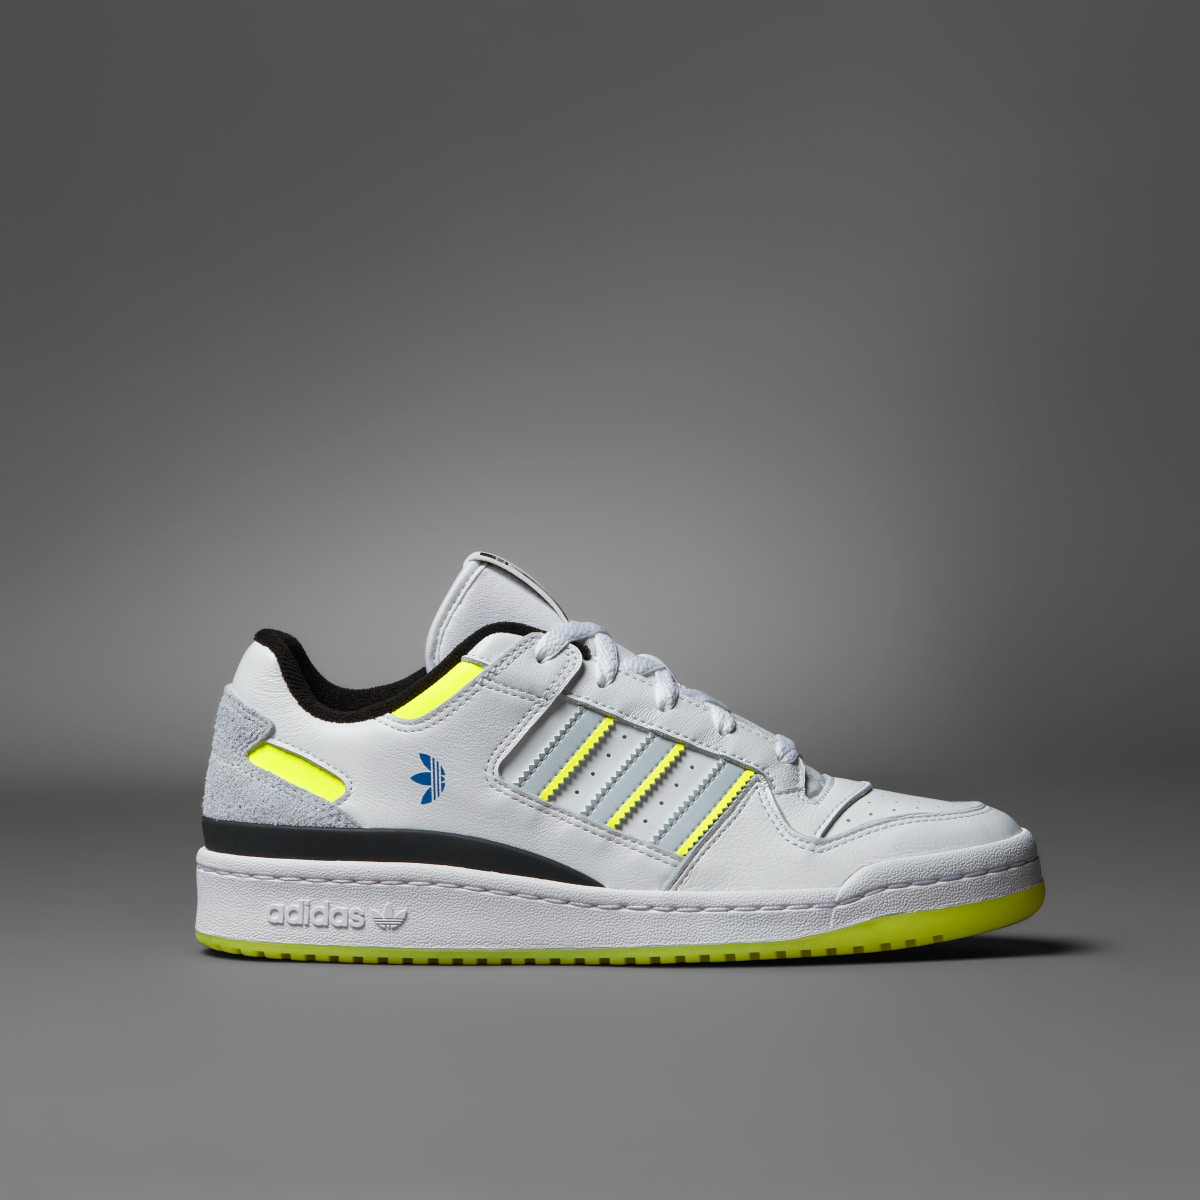 Adidas Forum Low CL x Indigo Herz Schuh. 4